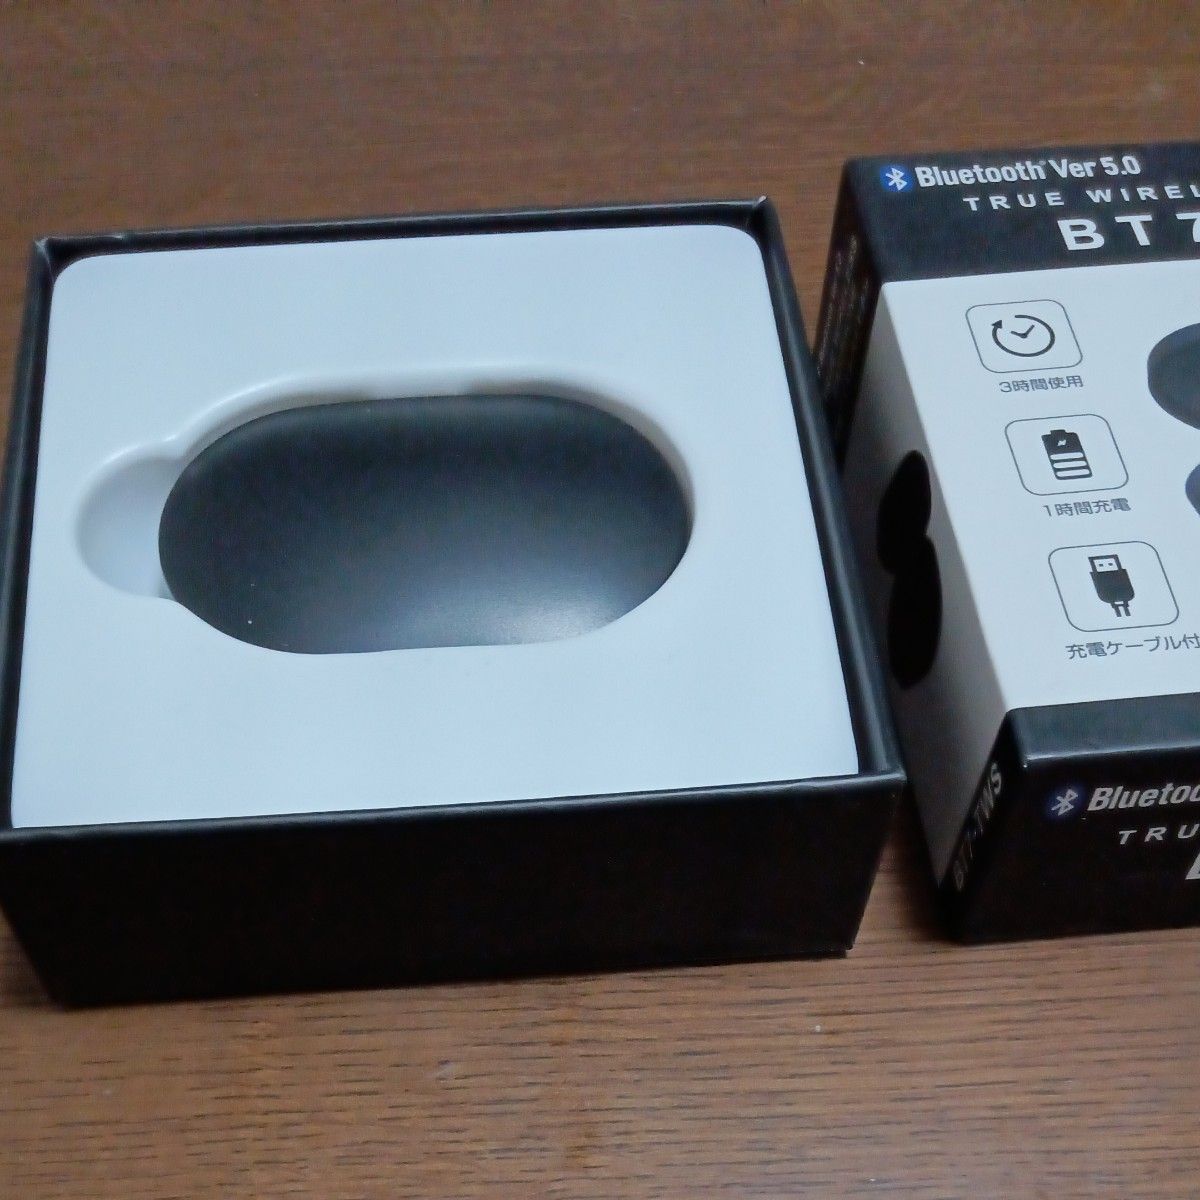 完全ワイヤレスイヤホン　ワイヤレスイヤホン　イヤフォン Bluetooth　ブルートゥース　BT7-TWS　エル・エル・ピー 新品